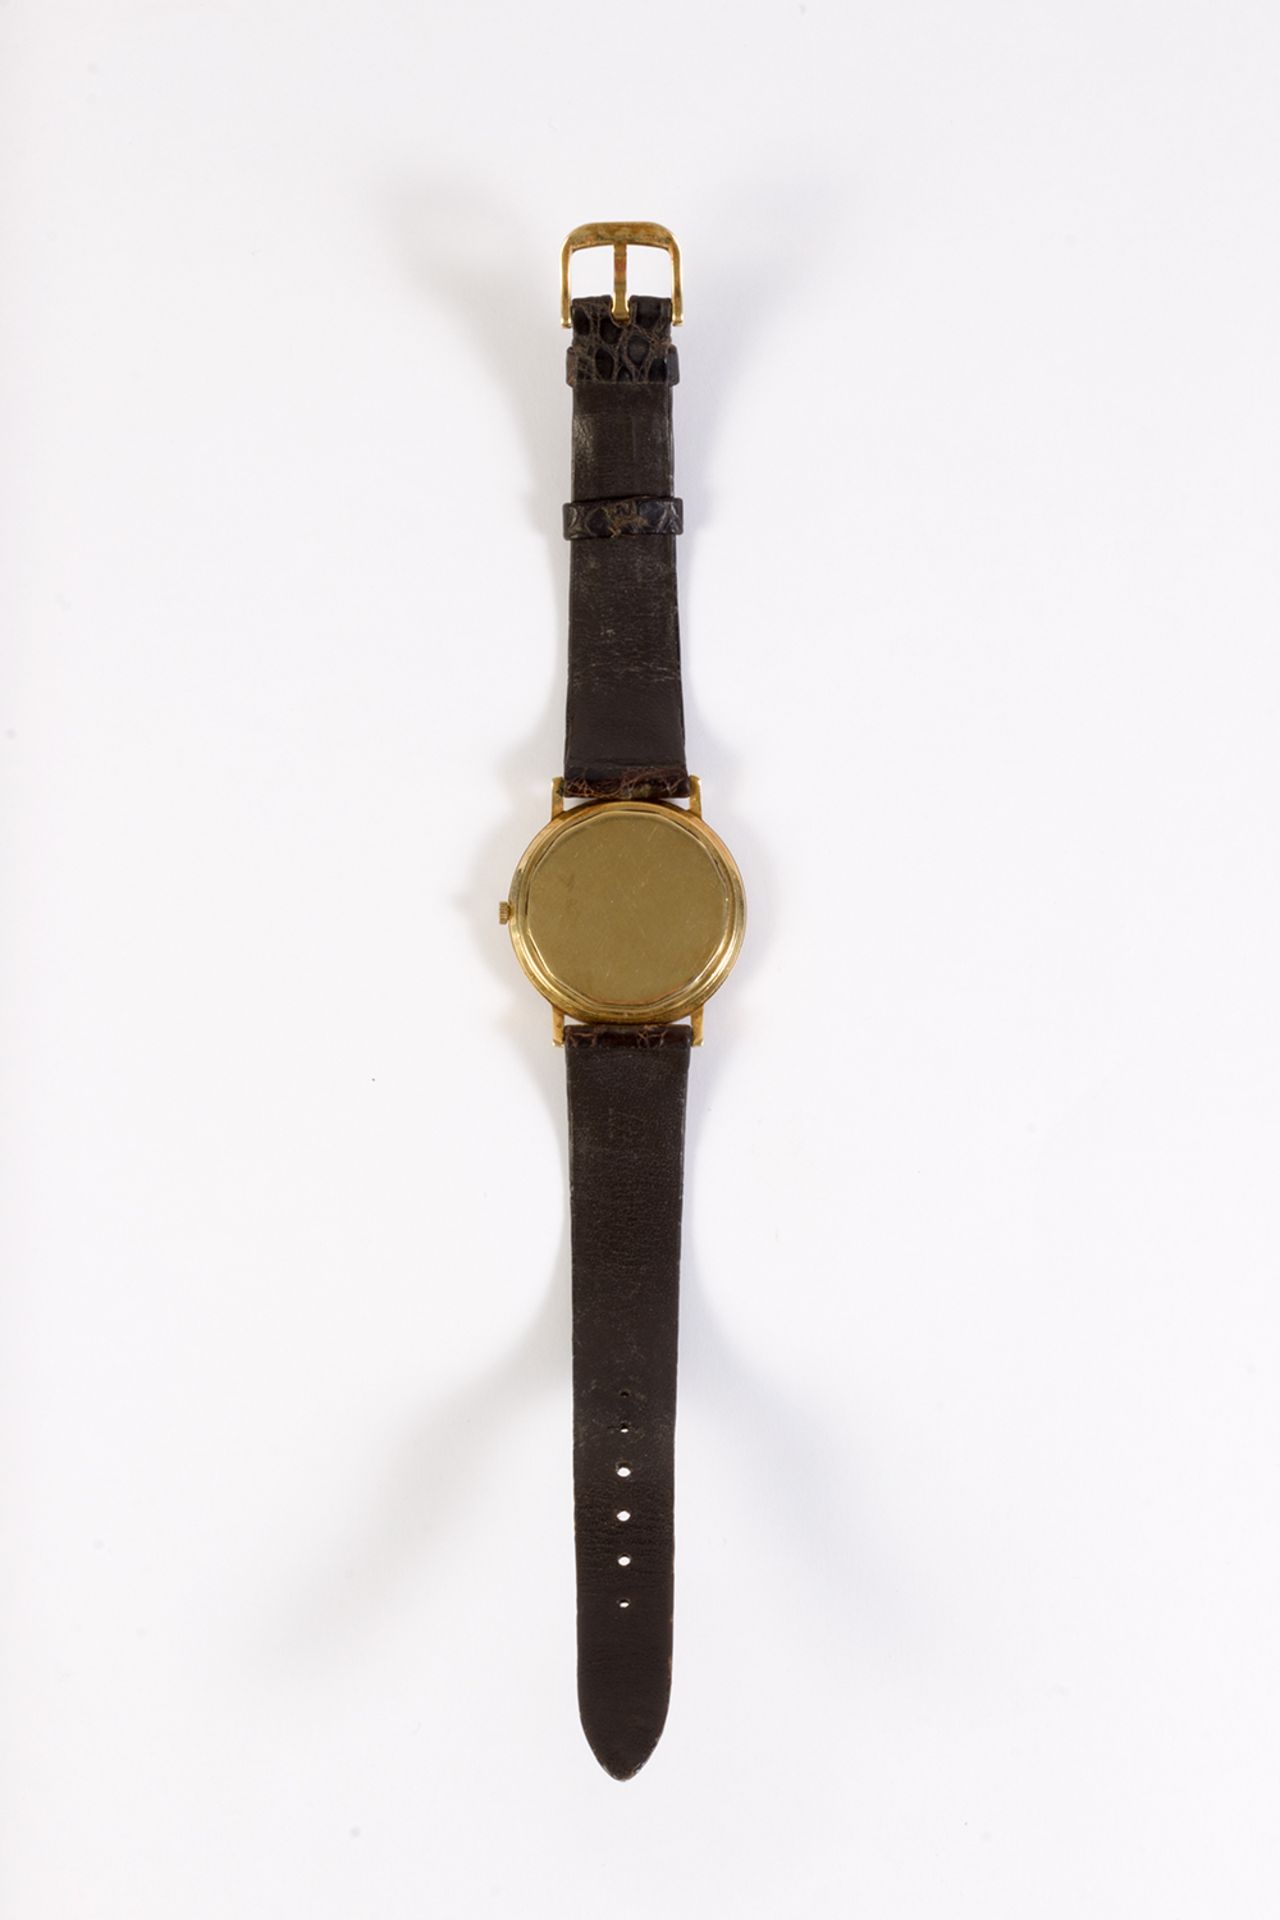 Reloj de pulsera Audemars Piguet, modelo Gübelin, en oro y correa de piel. - Image 3 of 6